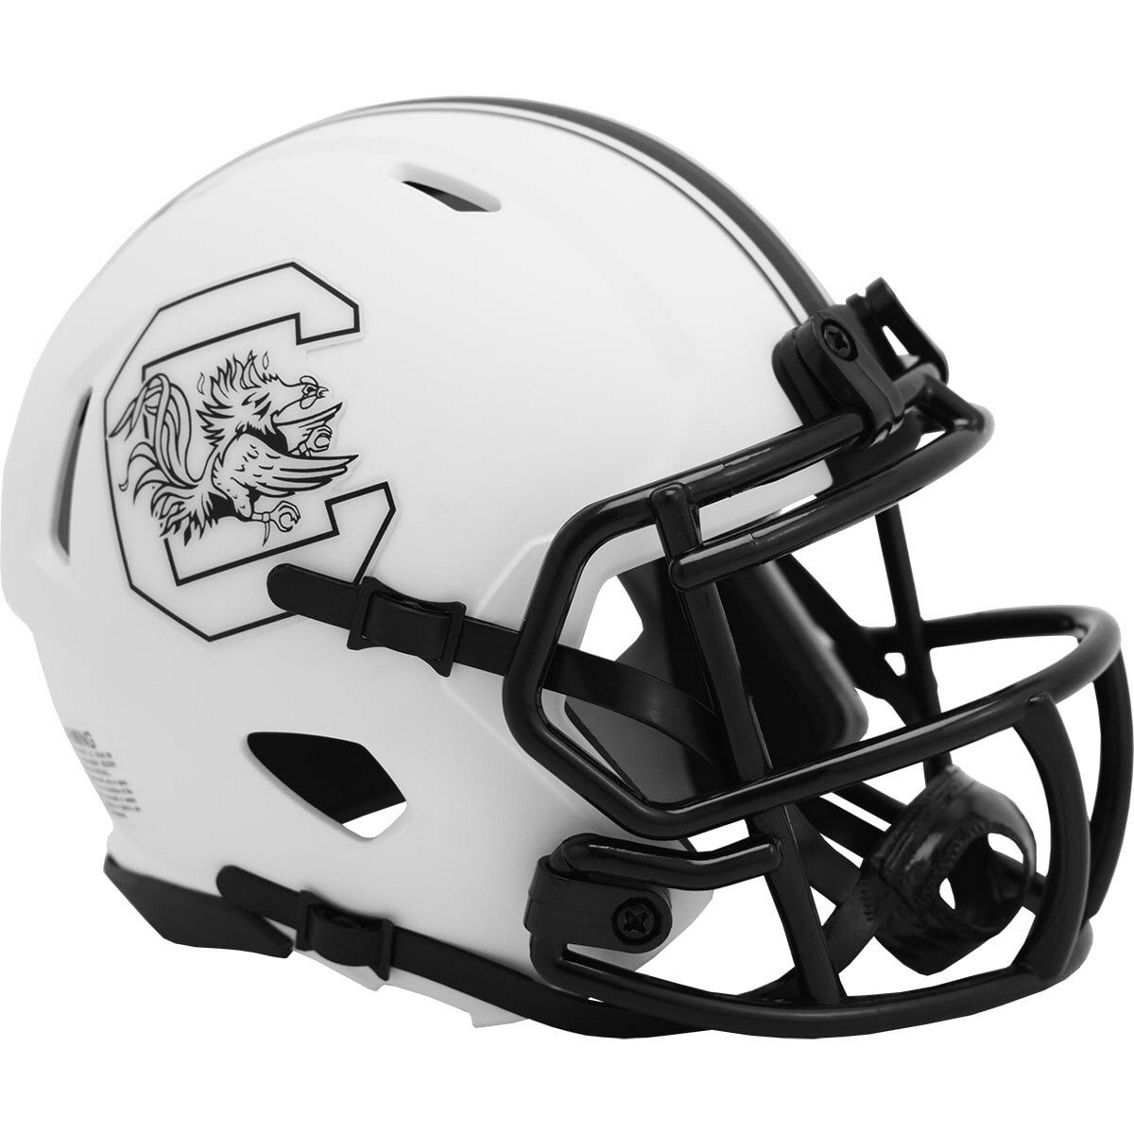 Riddell South Carolina Gamecocks Riddell LUNAR Alternate Revolution Speed Mini Football Helmet - Image 2 of 2